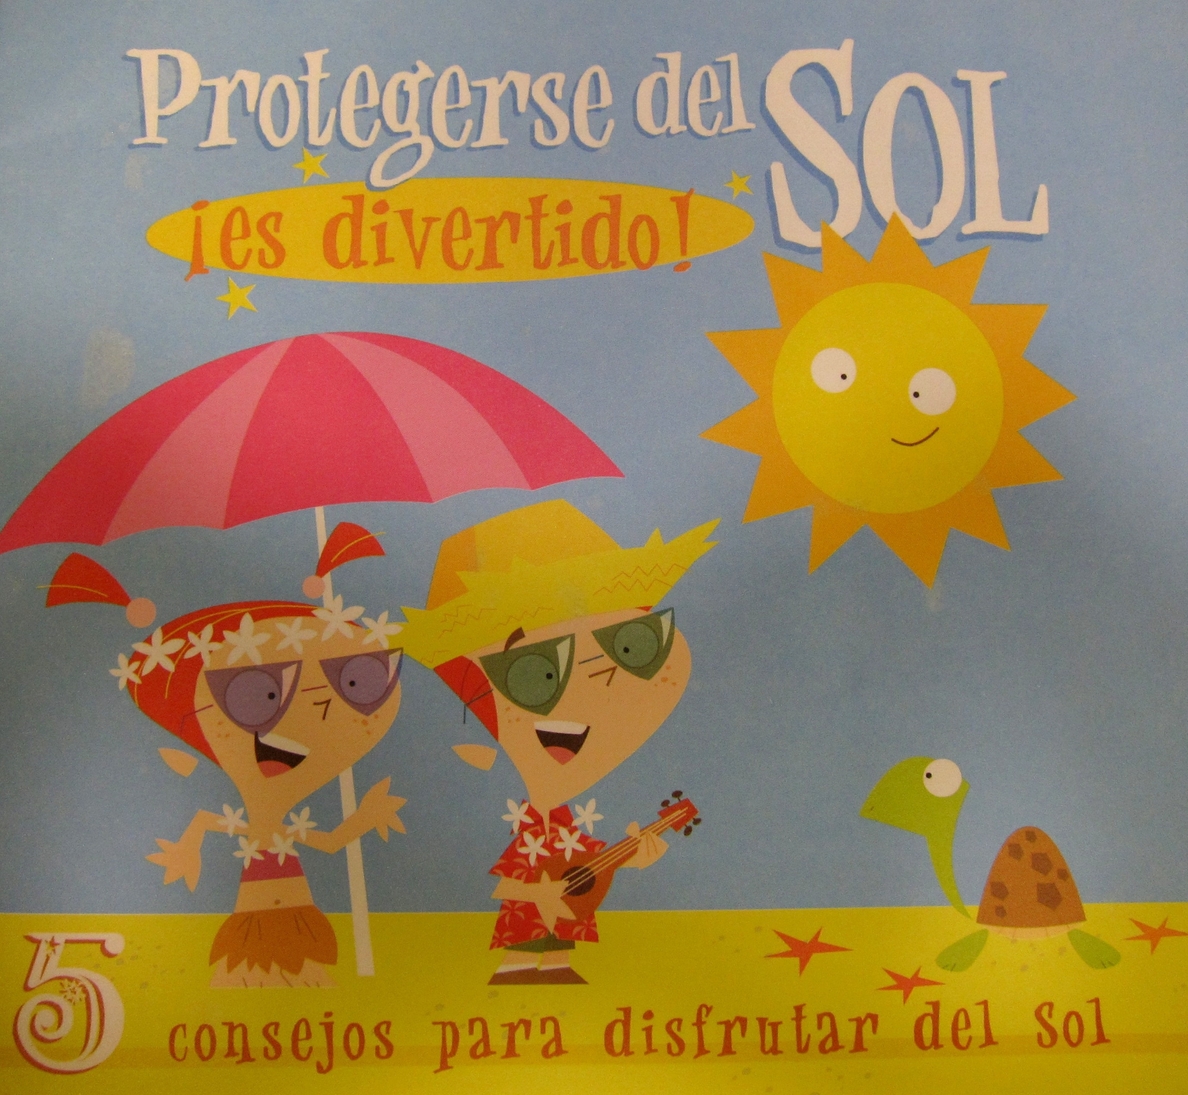 Una campaña para protegerse del sol llegará este verano a 1.600 niños de las ludotecas municipales